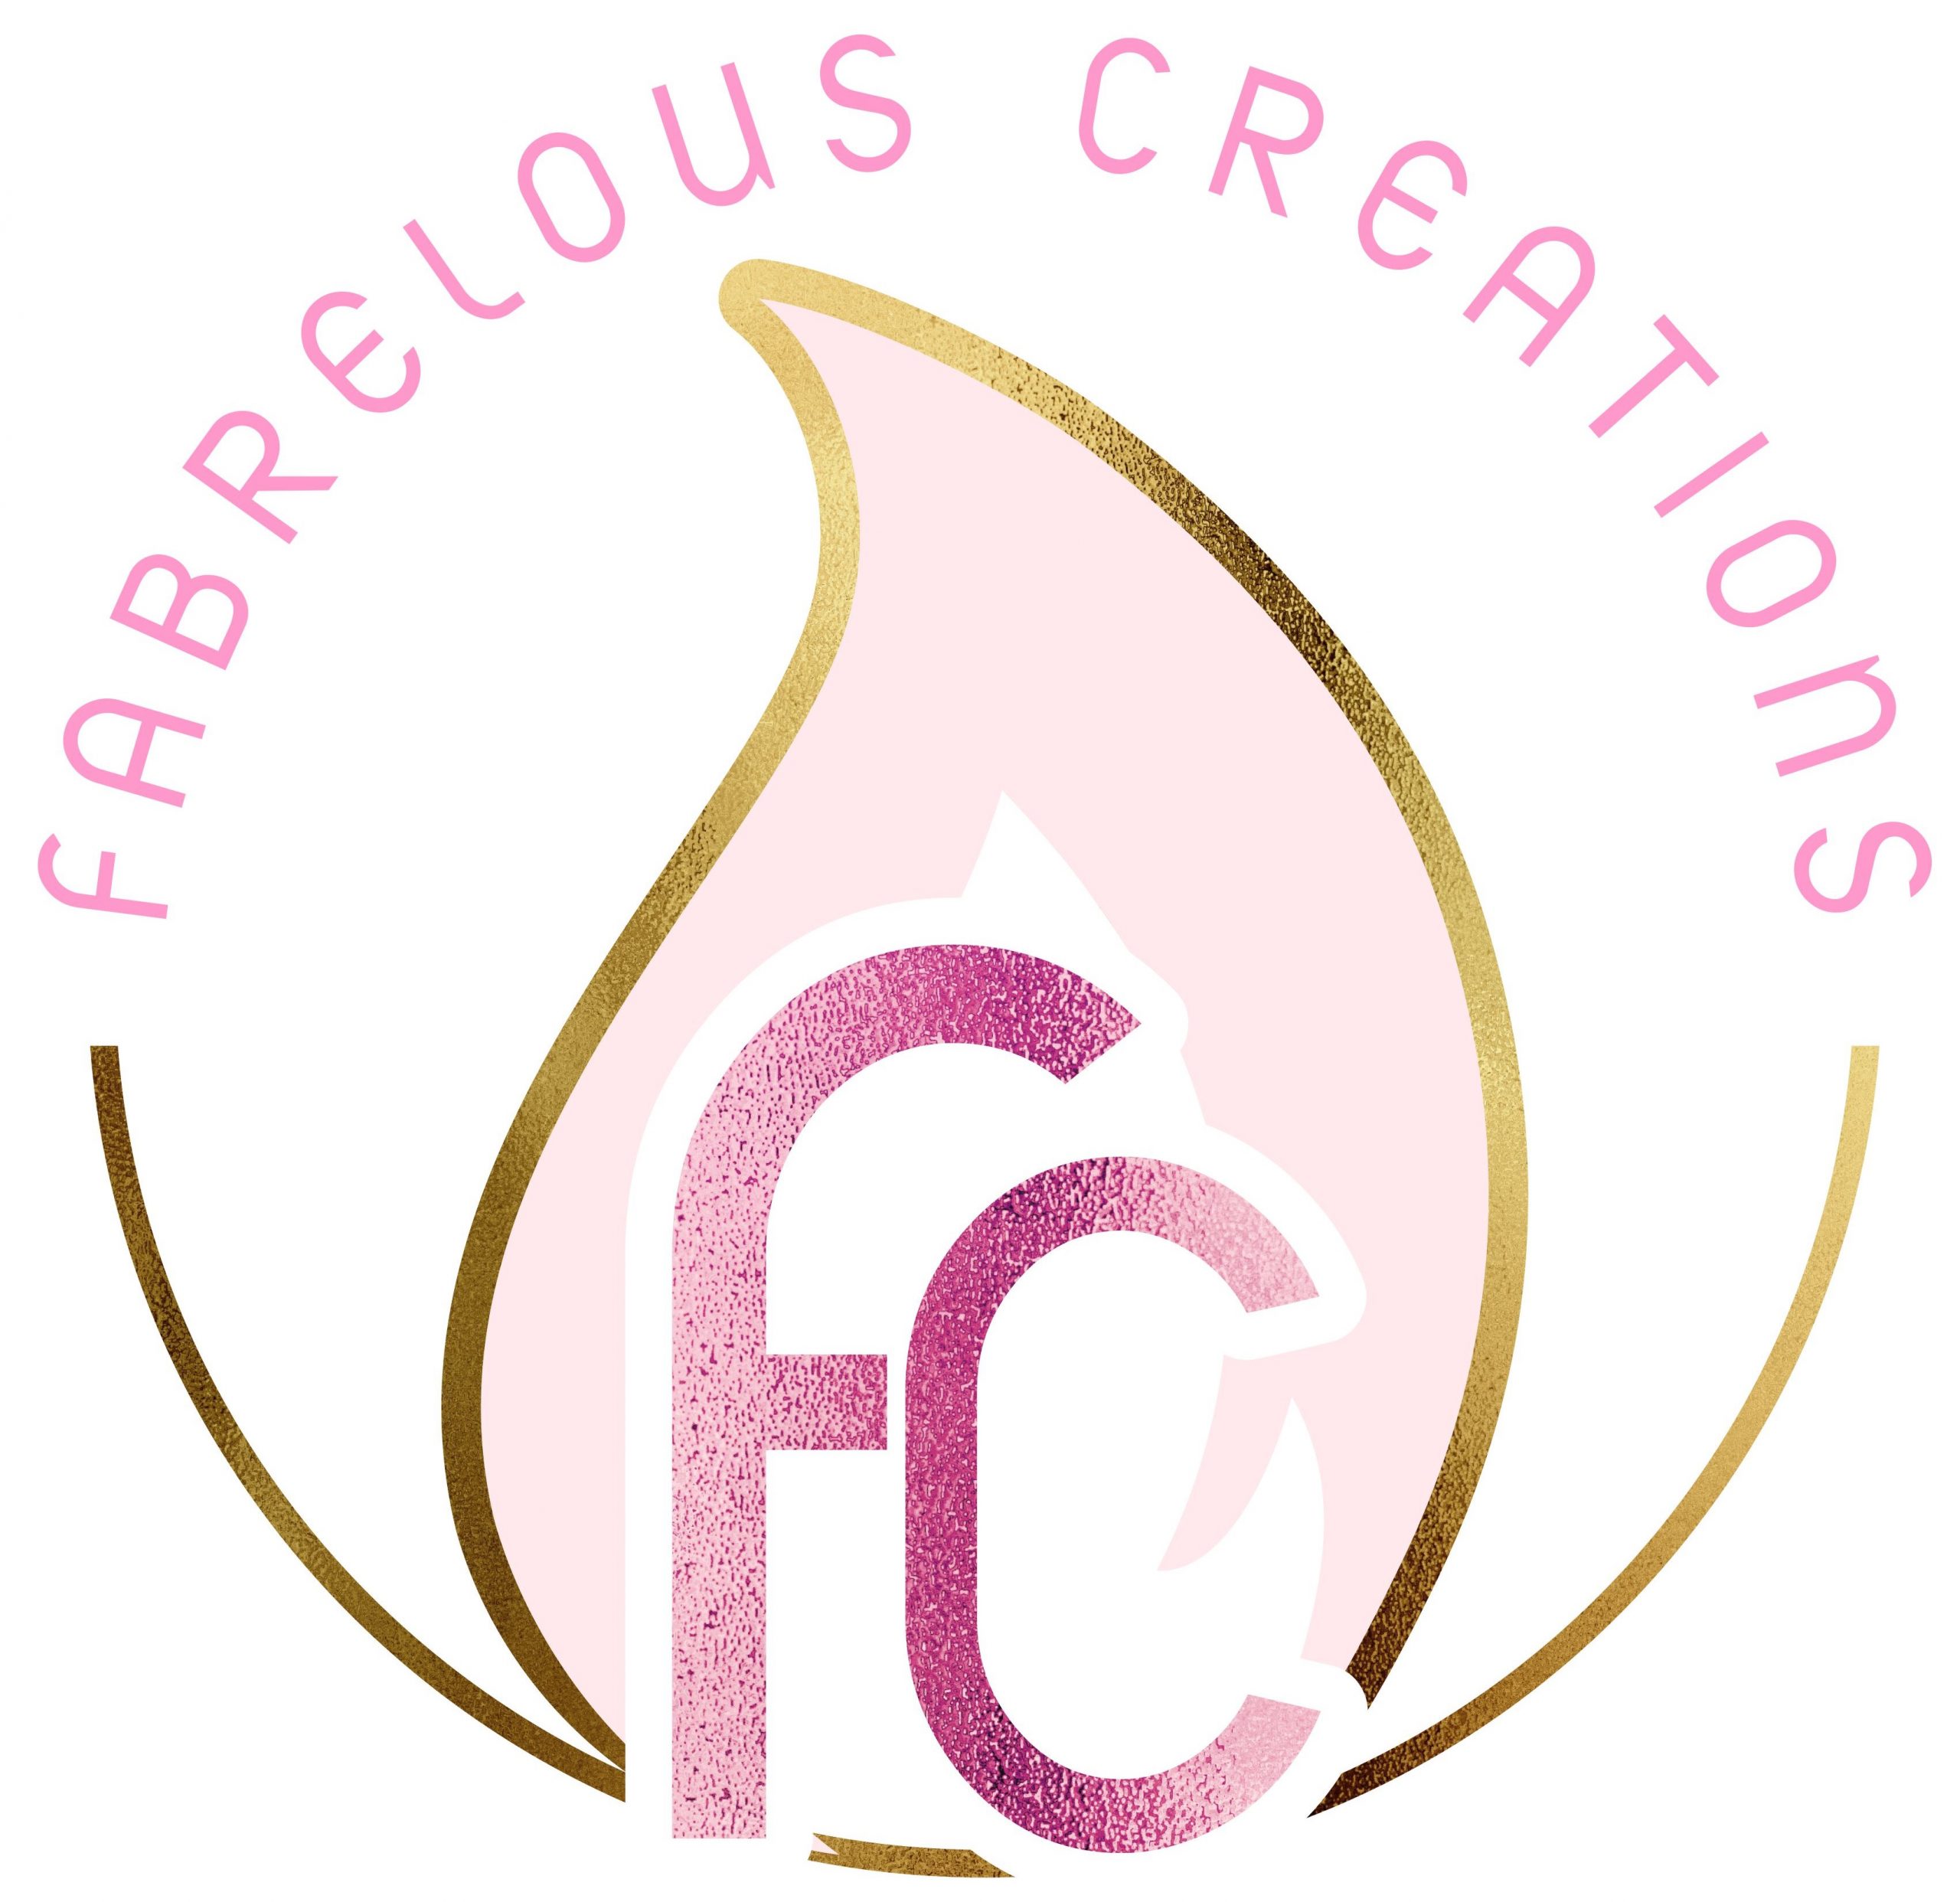 Fabrelous Creations